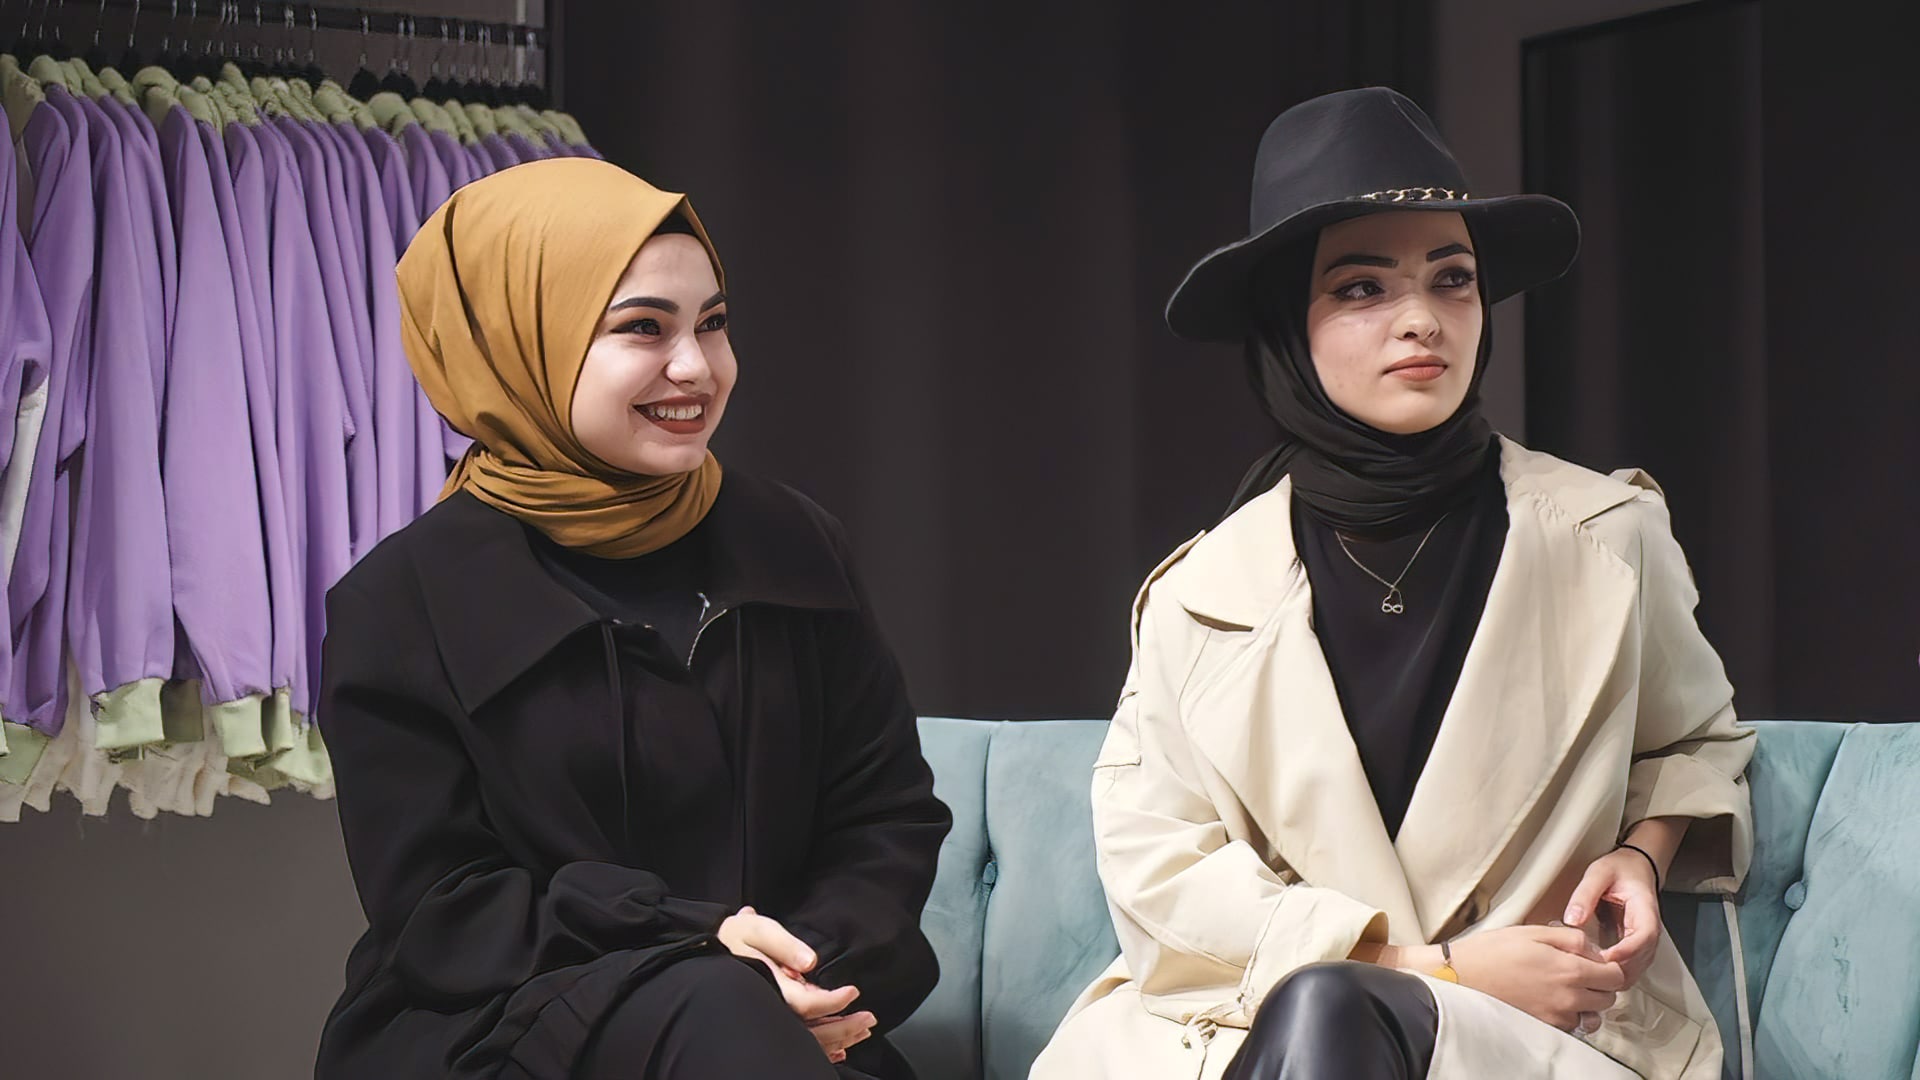 Giovani e turchi: il culto della bellezza?